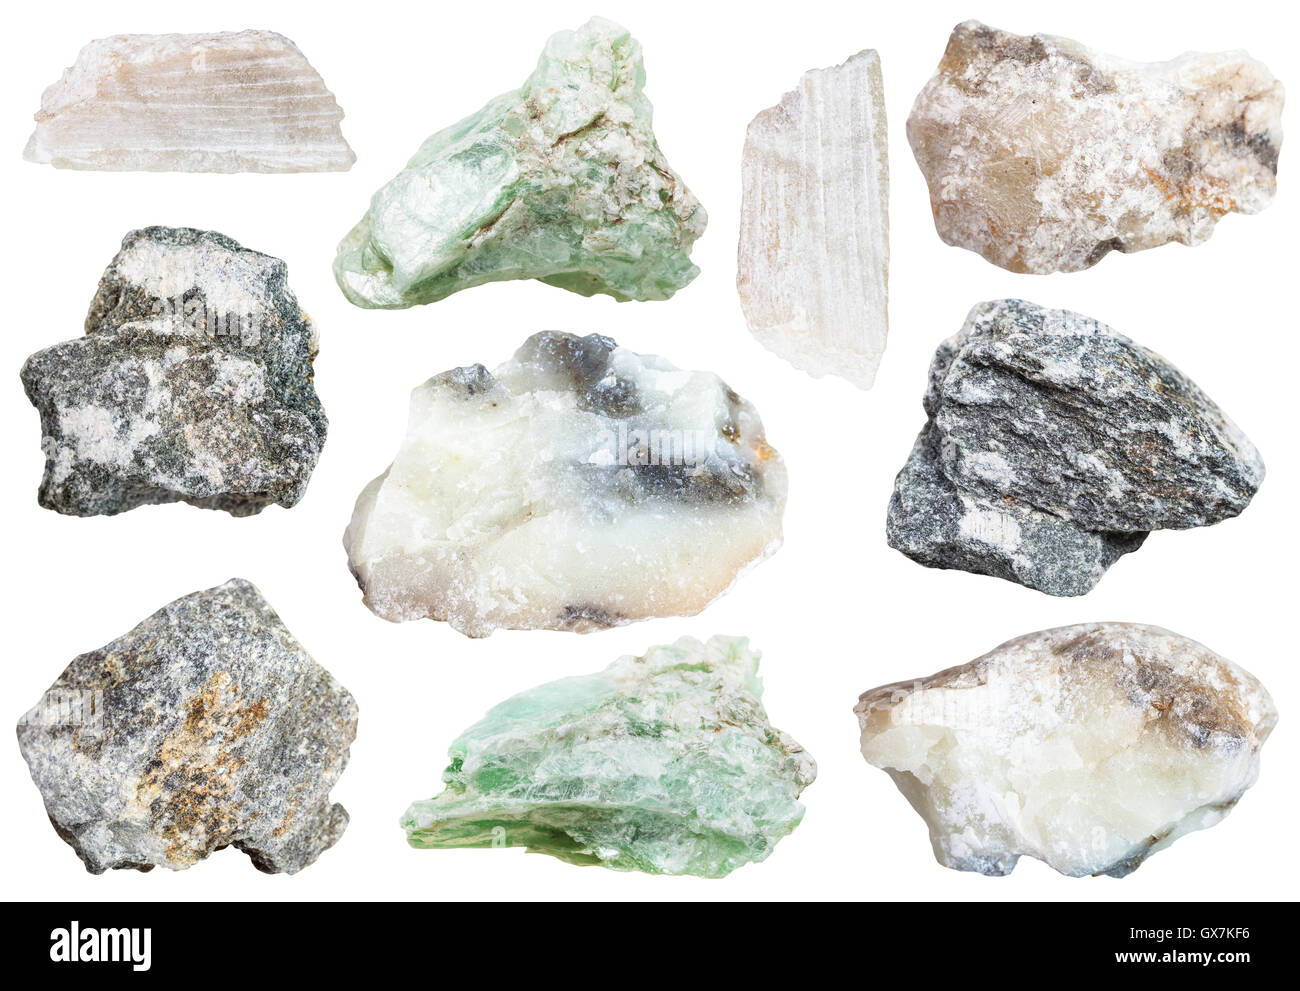 Talc - Soap Stone - Mohmand Dada Minerals - MDM